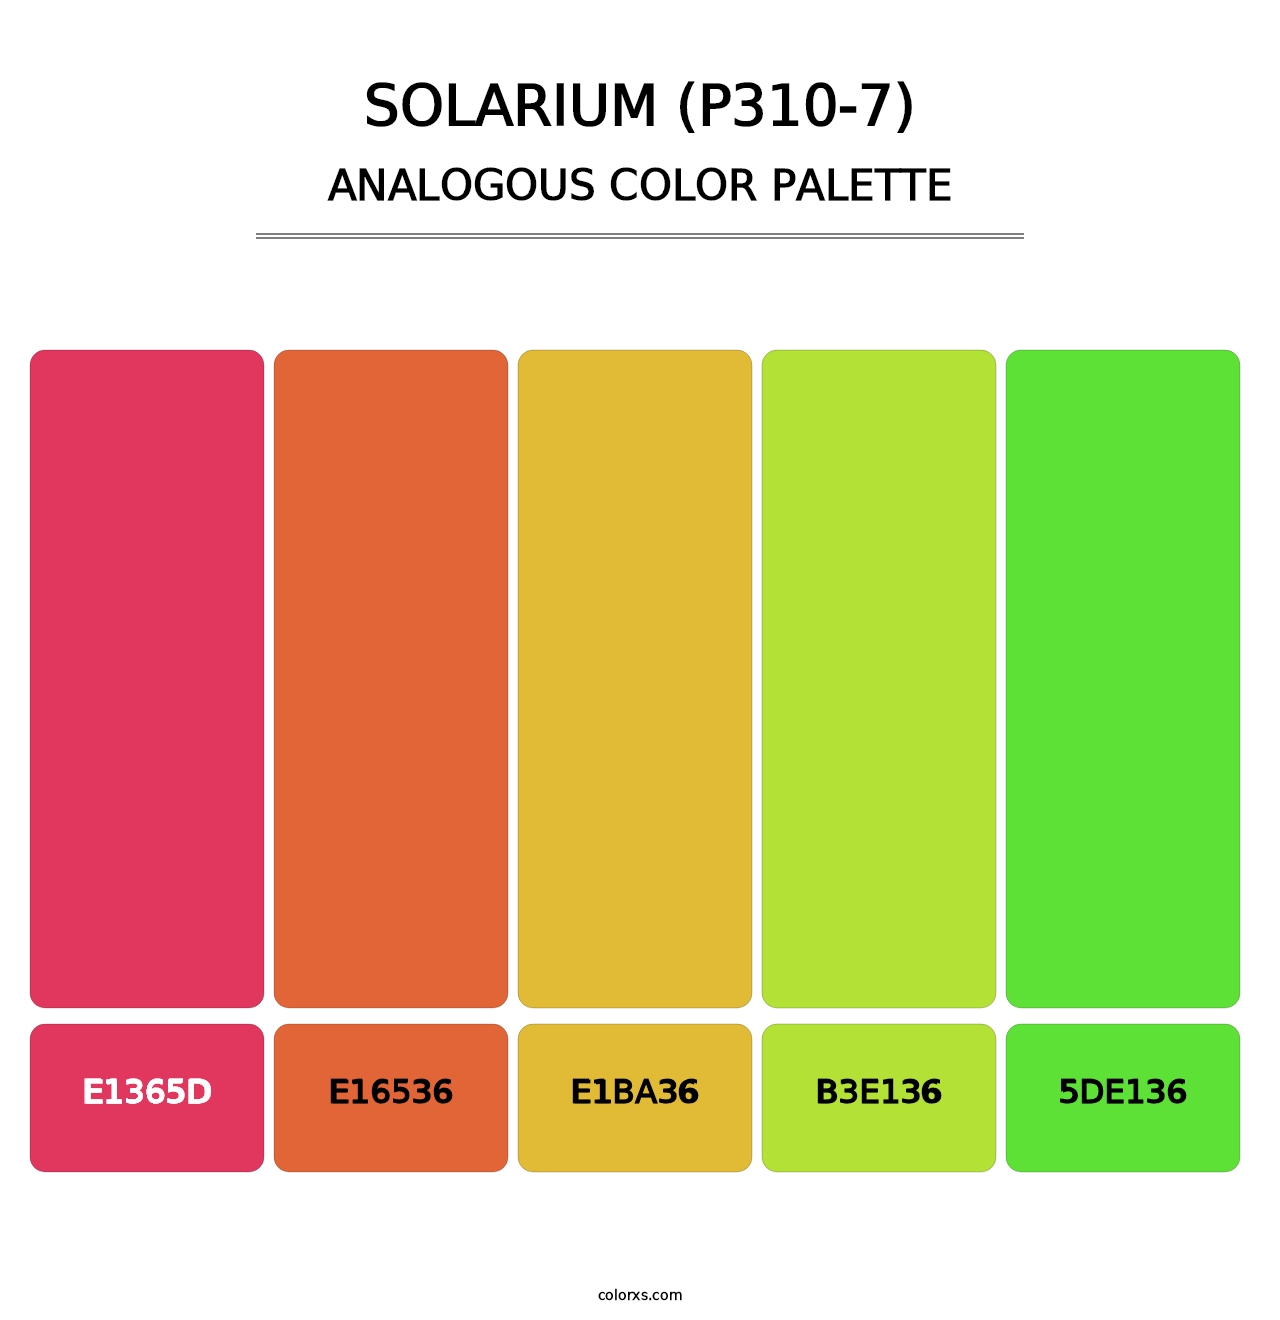 Solarium (P310-7) - Analogous Color Palette